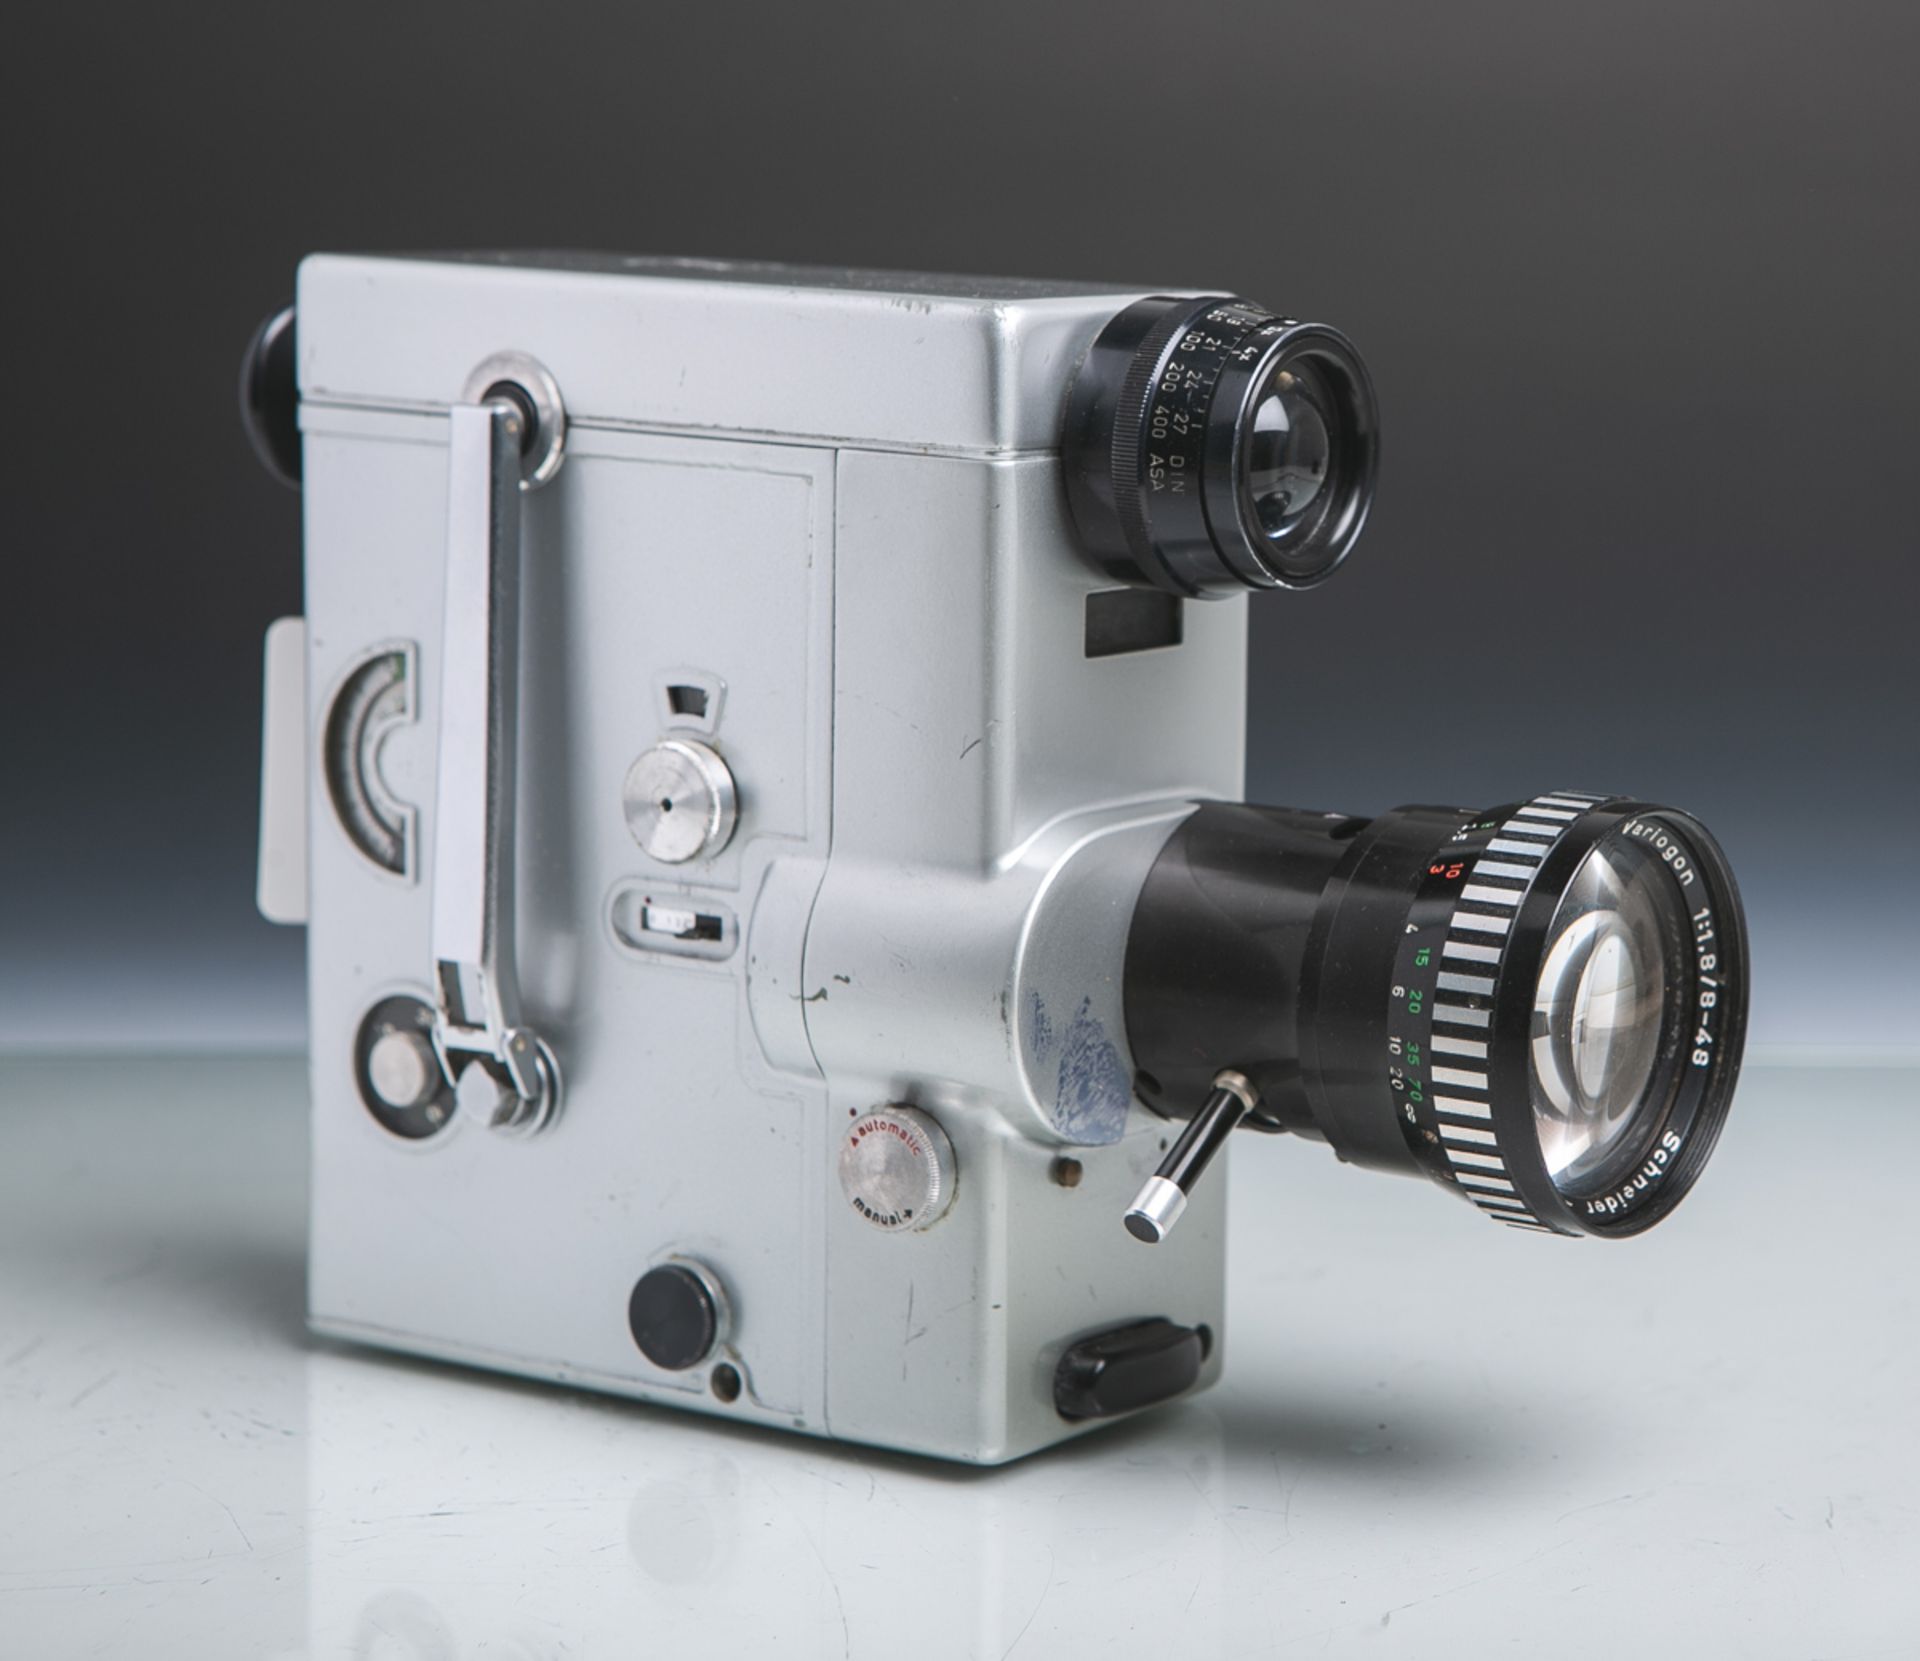 Filmkamera "Nizo FA3" von Braun AG (Bj. 1963 - 1965), Federwerk, Vollautomat,